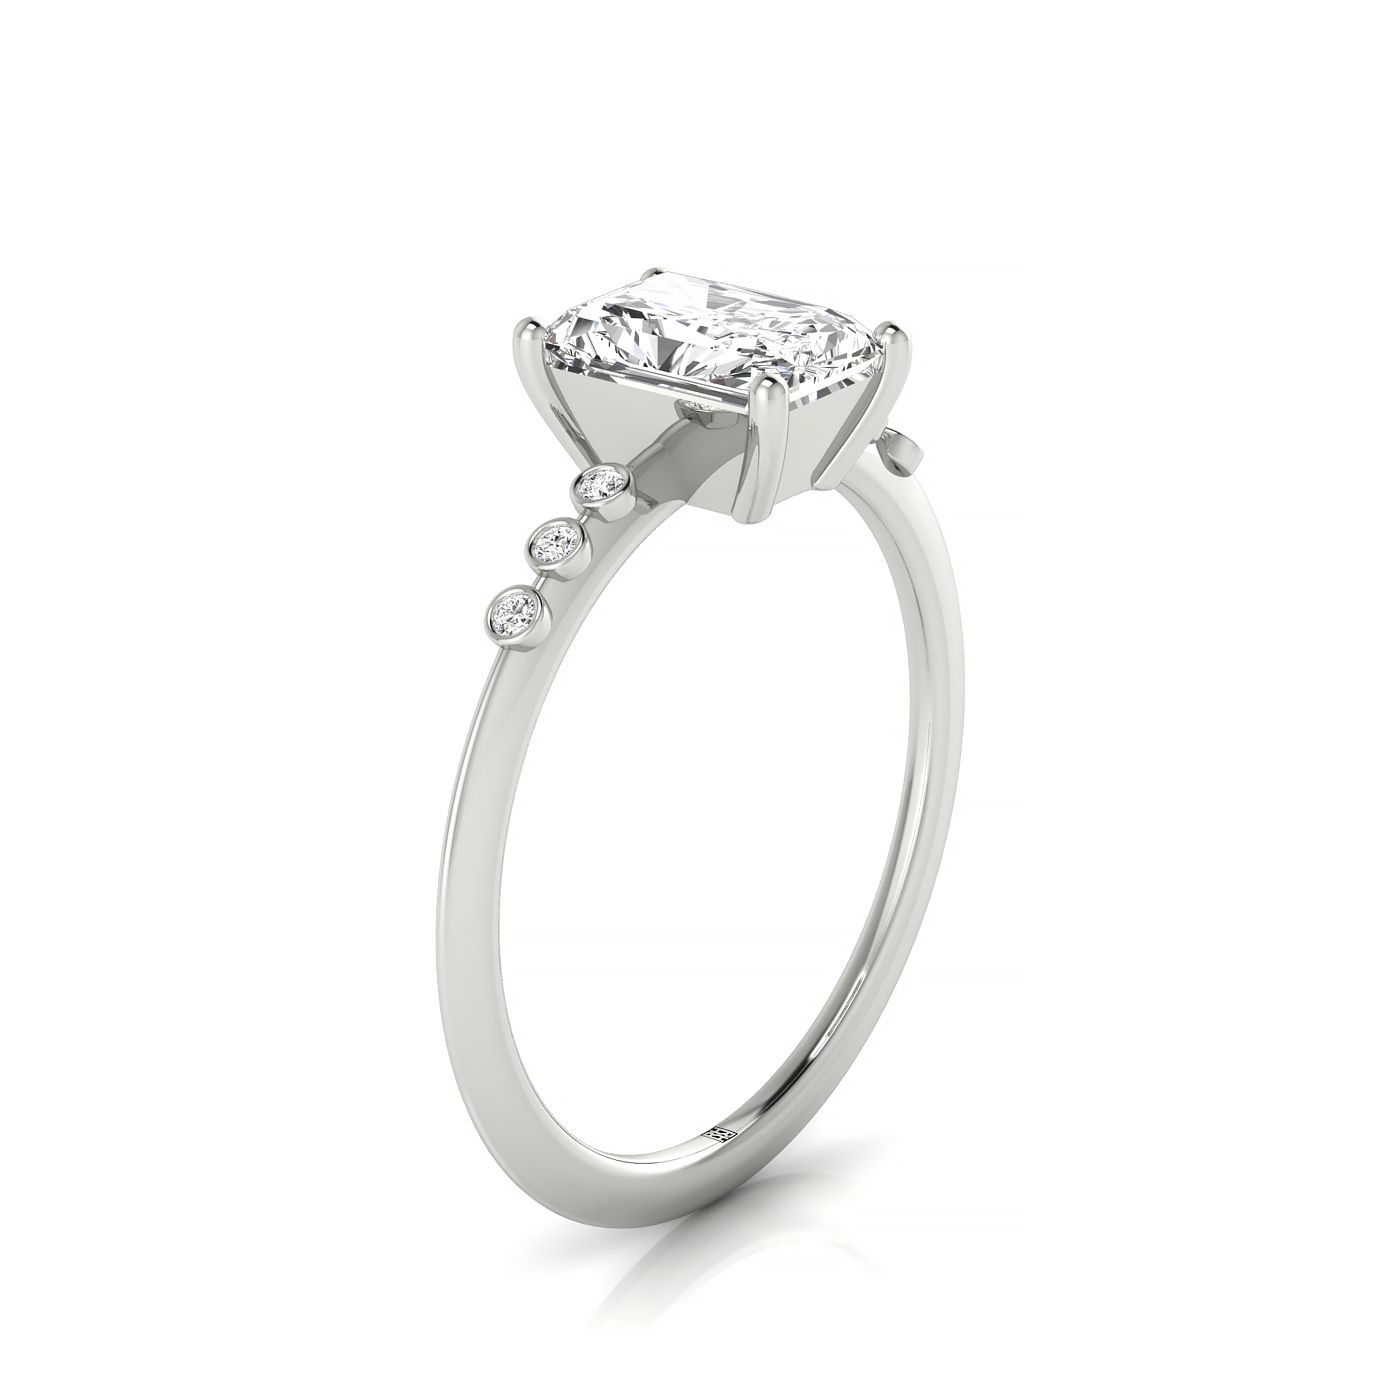 18kw Radiant Engagement Ring With 6 Bezel Set Round Diamonds On Shank